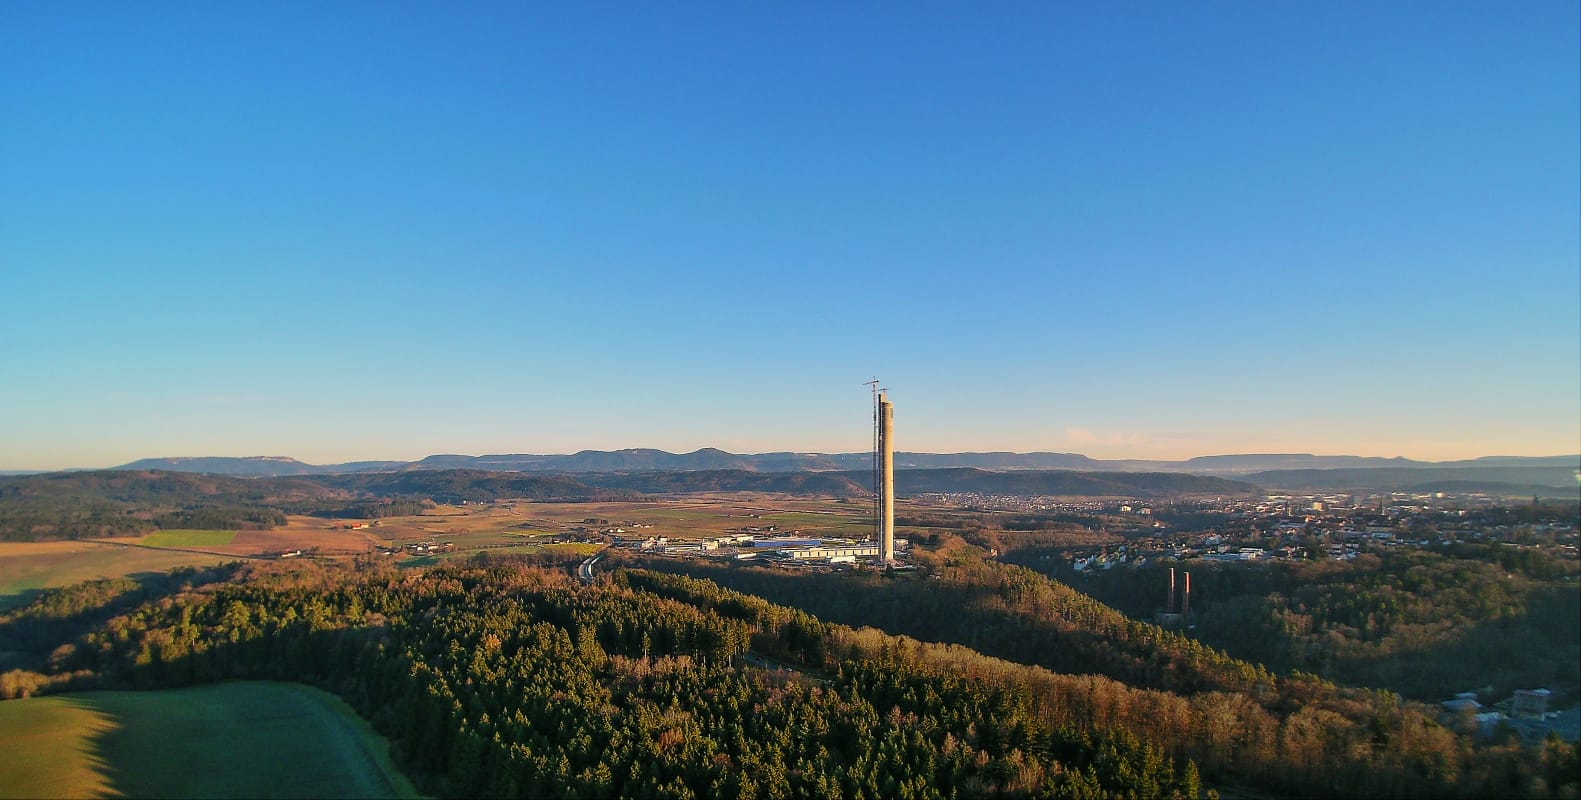 Der Testturm für Aufzüge ragt neben dem Städtchen Rottweil aus der beschaulichen Landschaft.